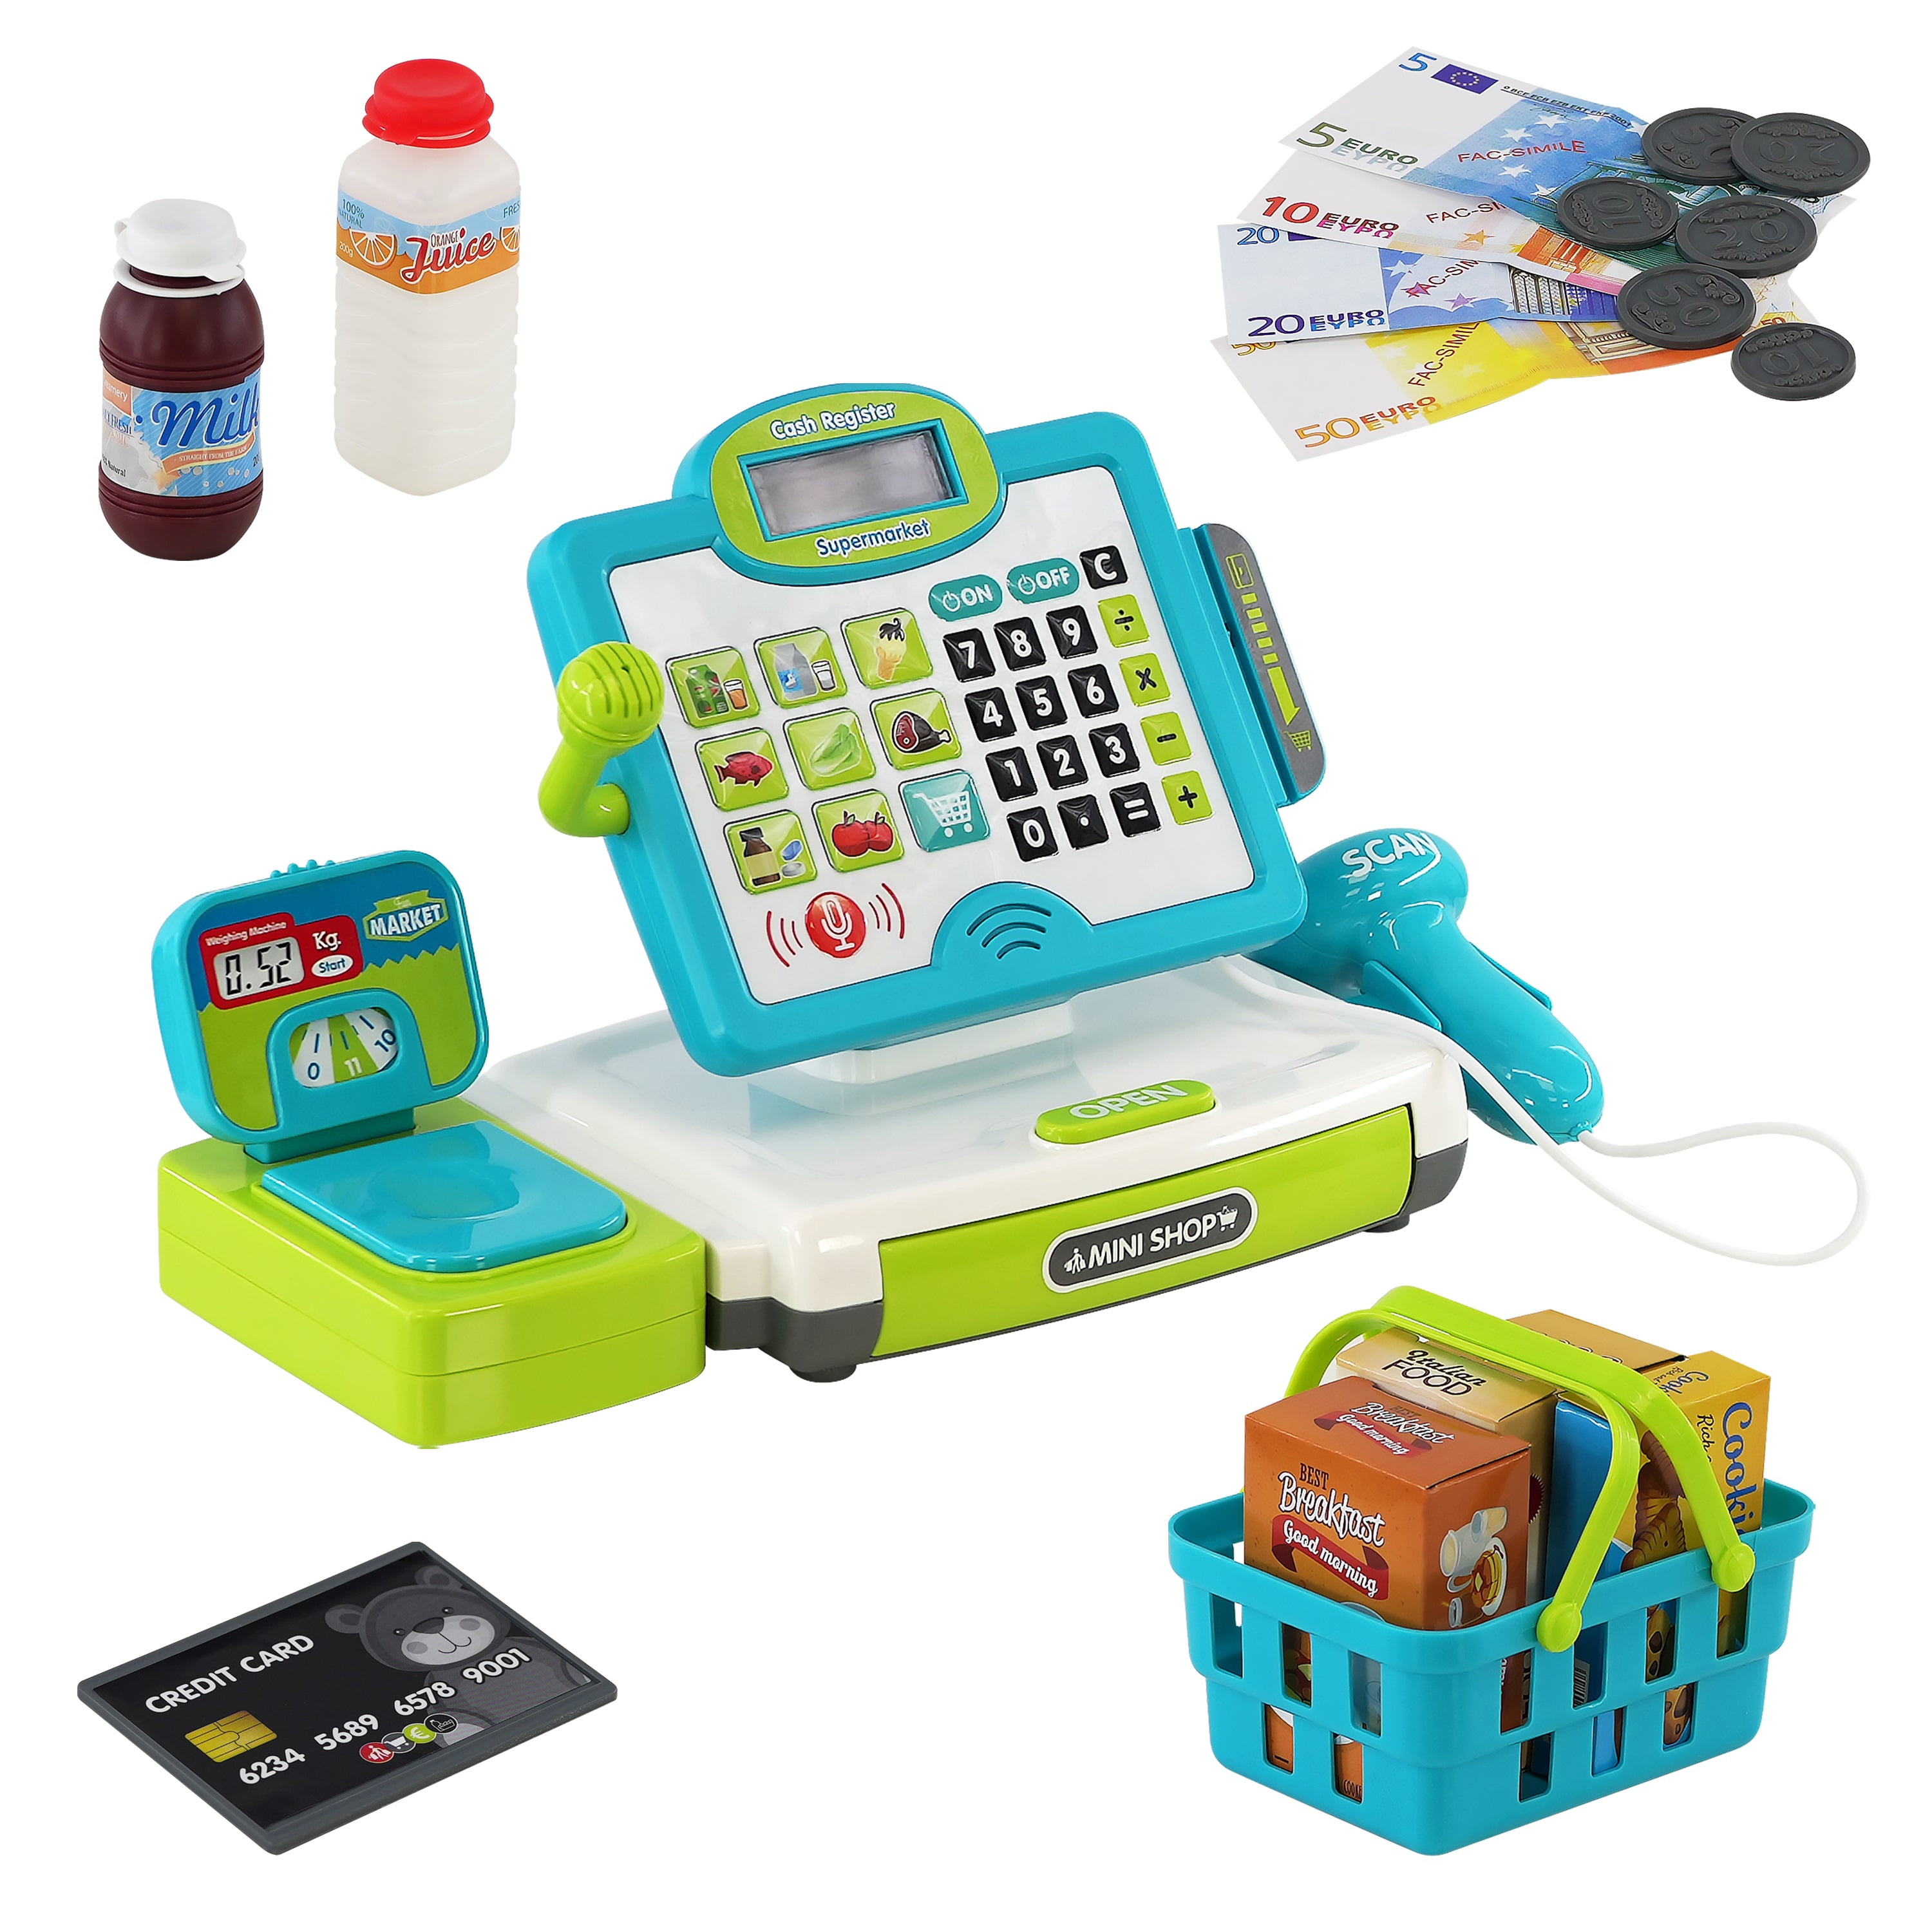 Mini Shop Cash Register Toy The Magic Toy Shop - The Magic Toy Shop